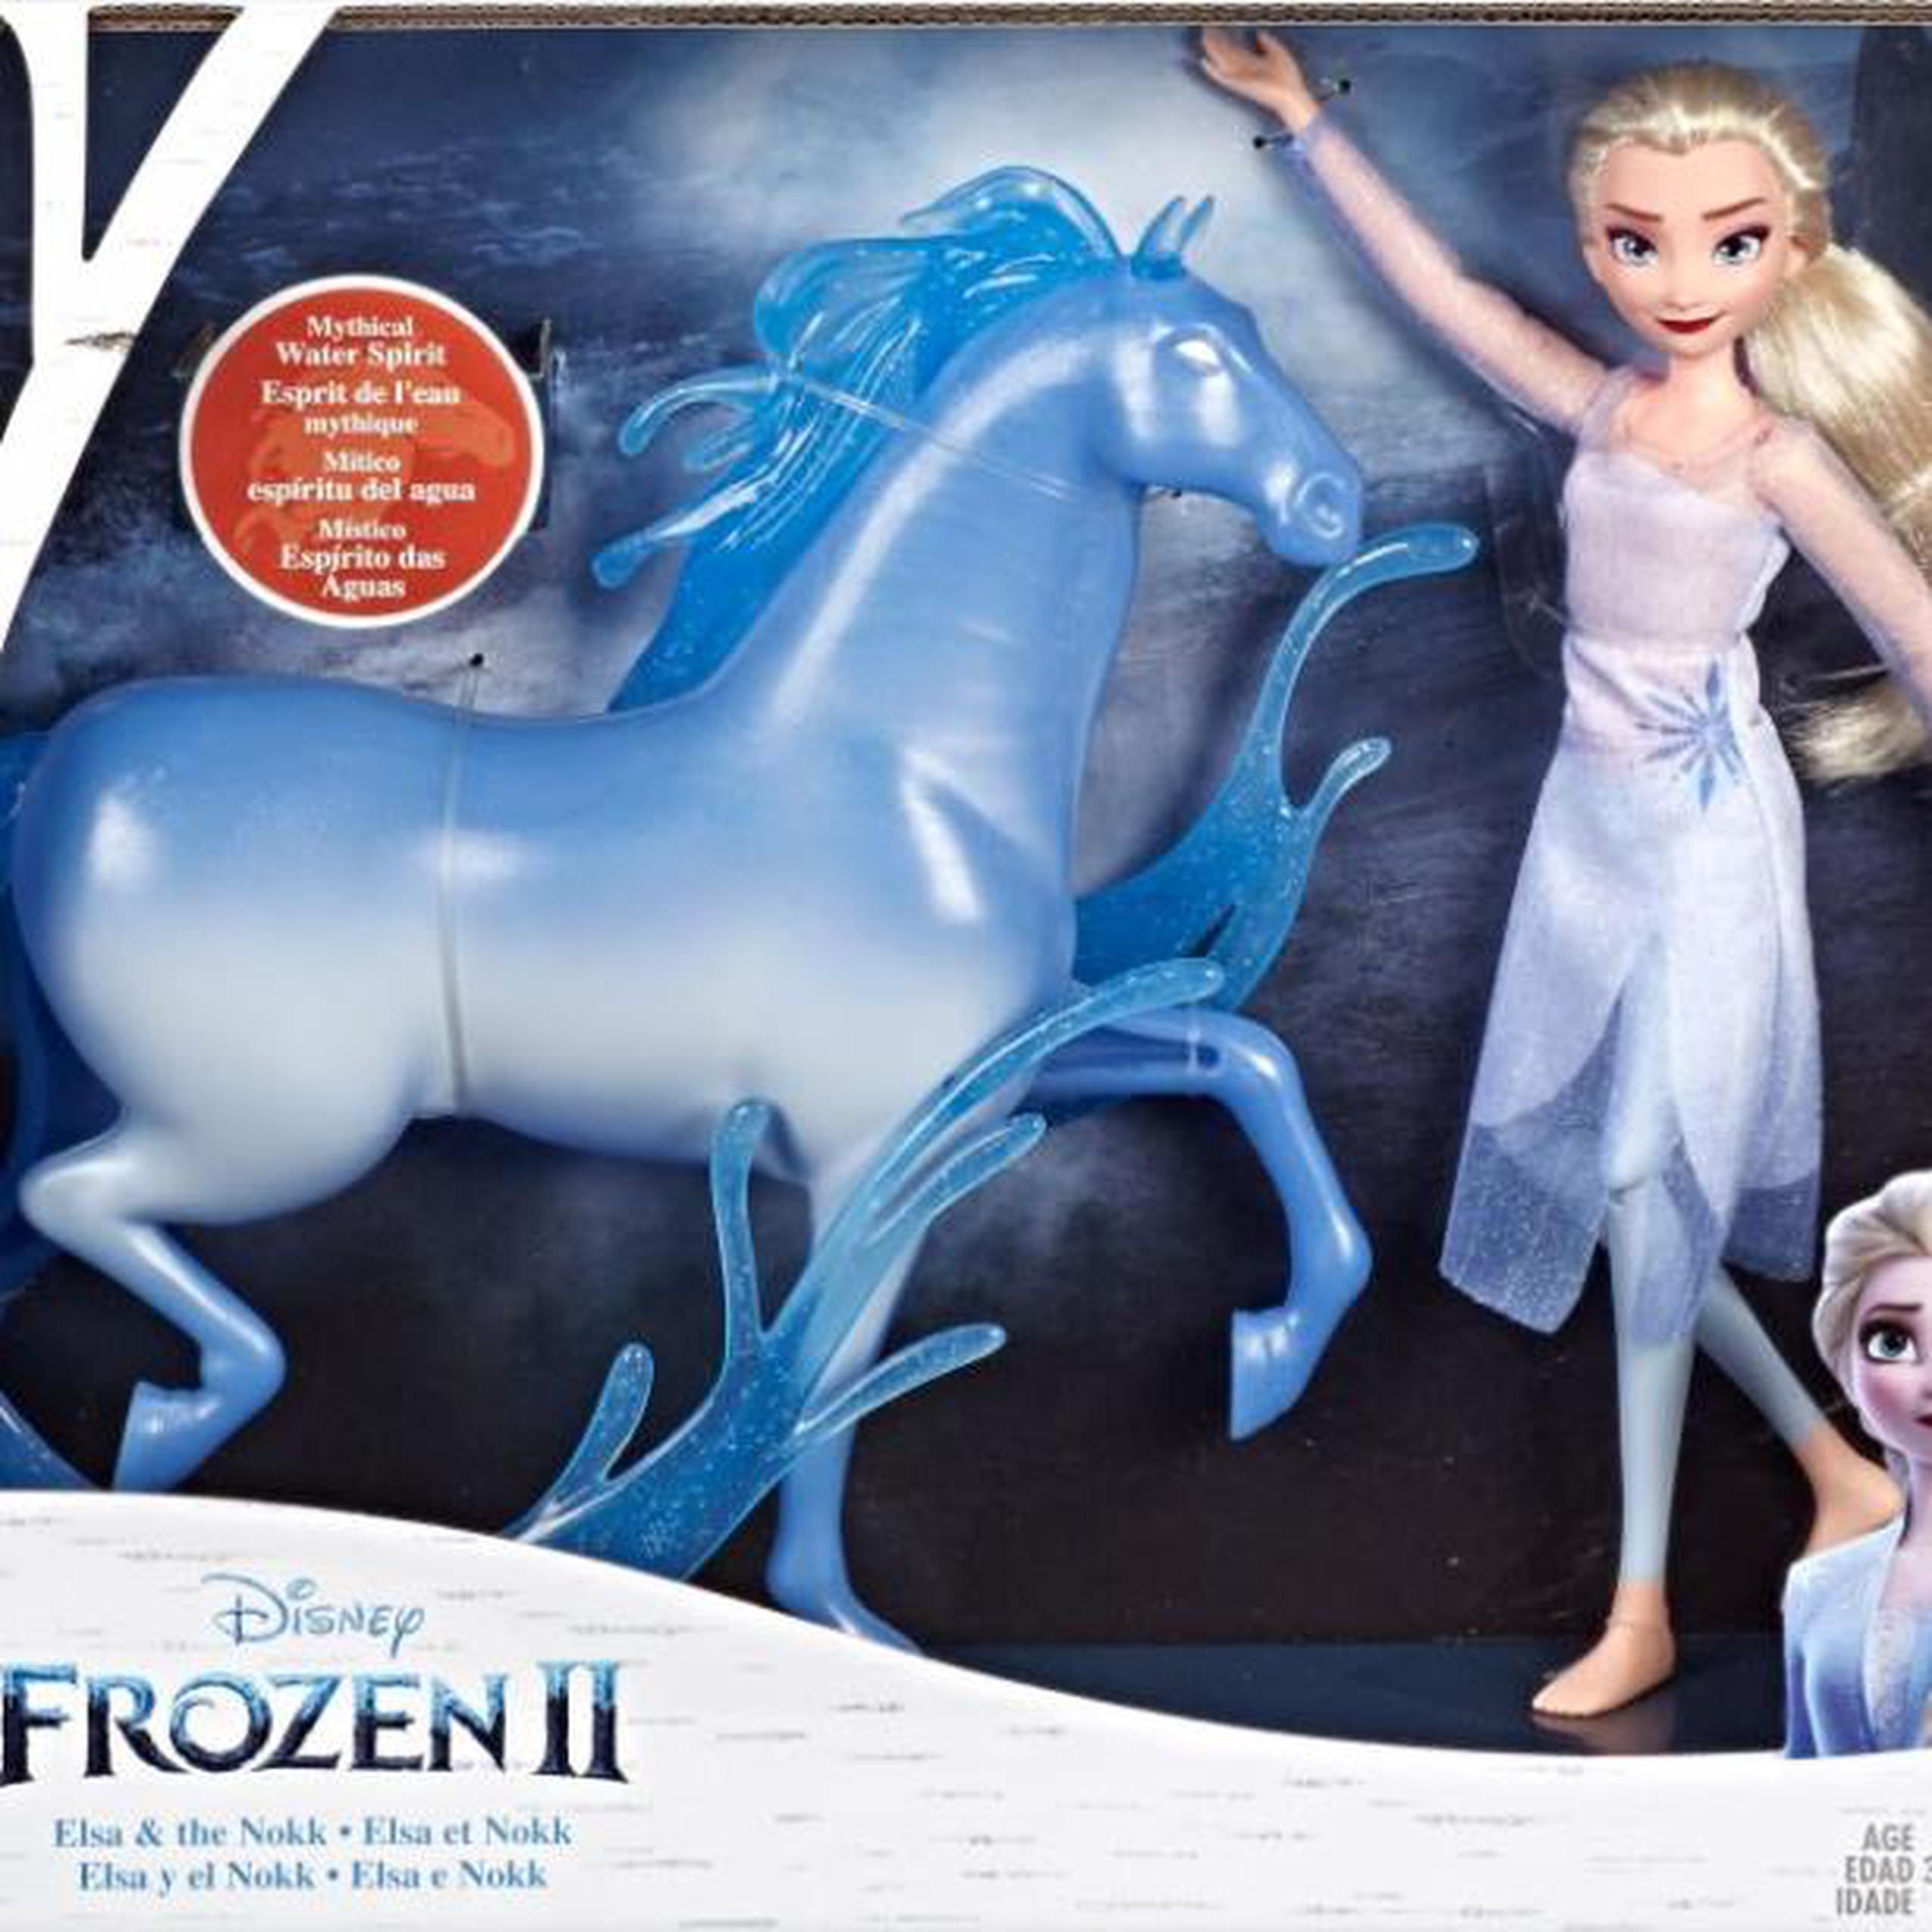 Los compradores buscaron sobre todo juguetes relacionados con la película “Frozen 2”, así como videojuegos de deportes y laptops de Apple. (AP)